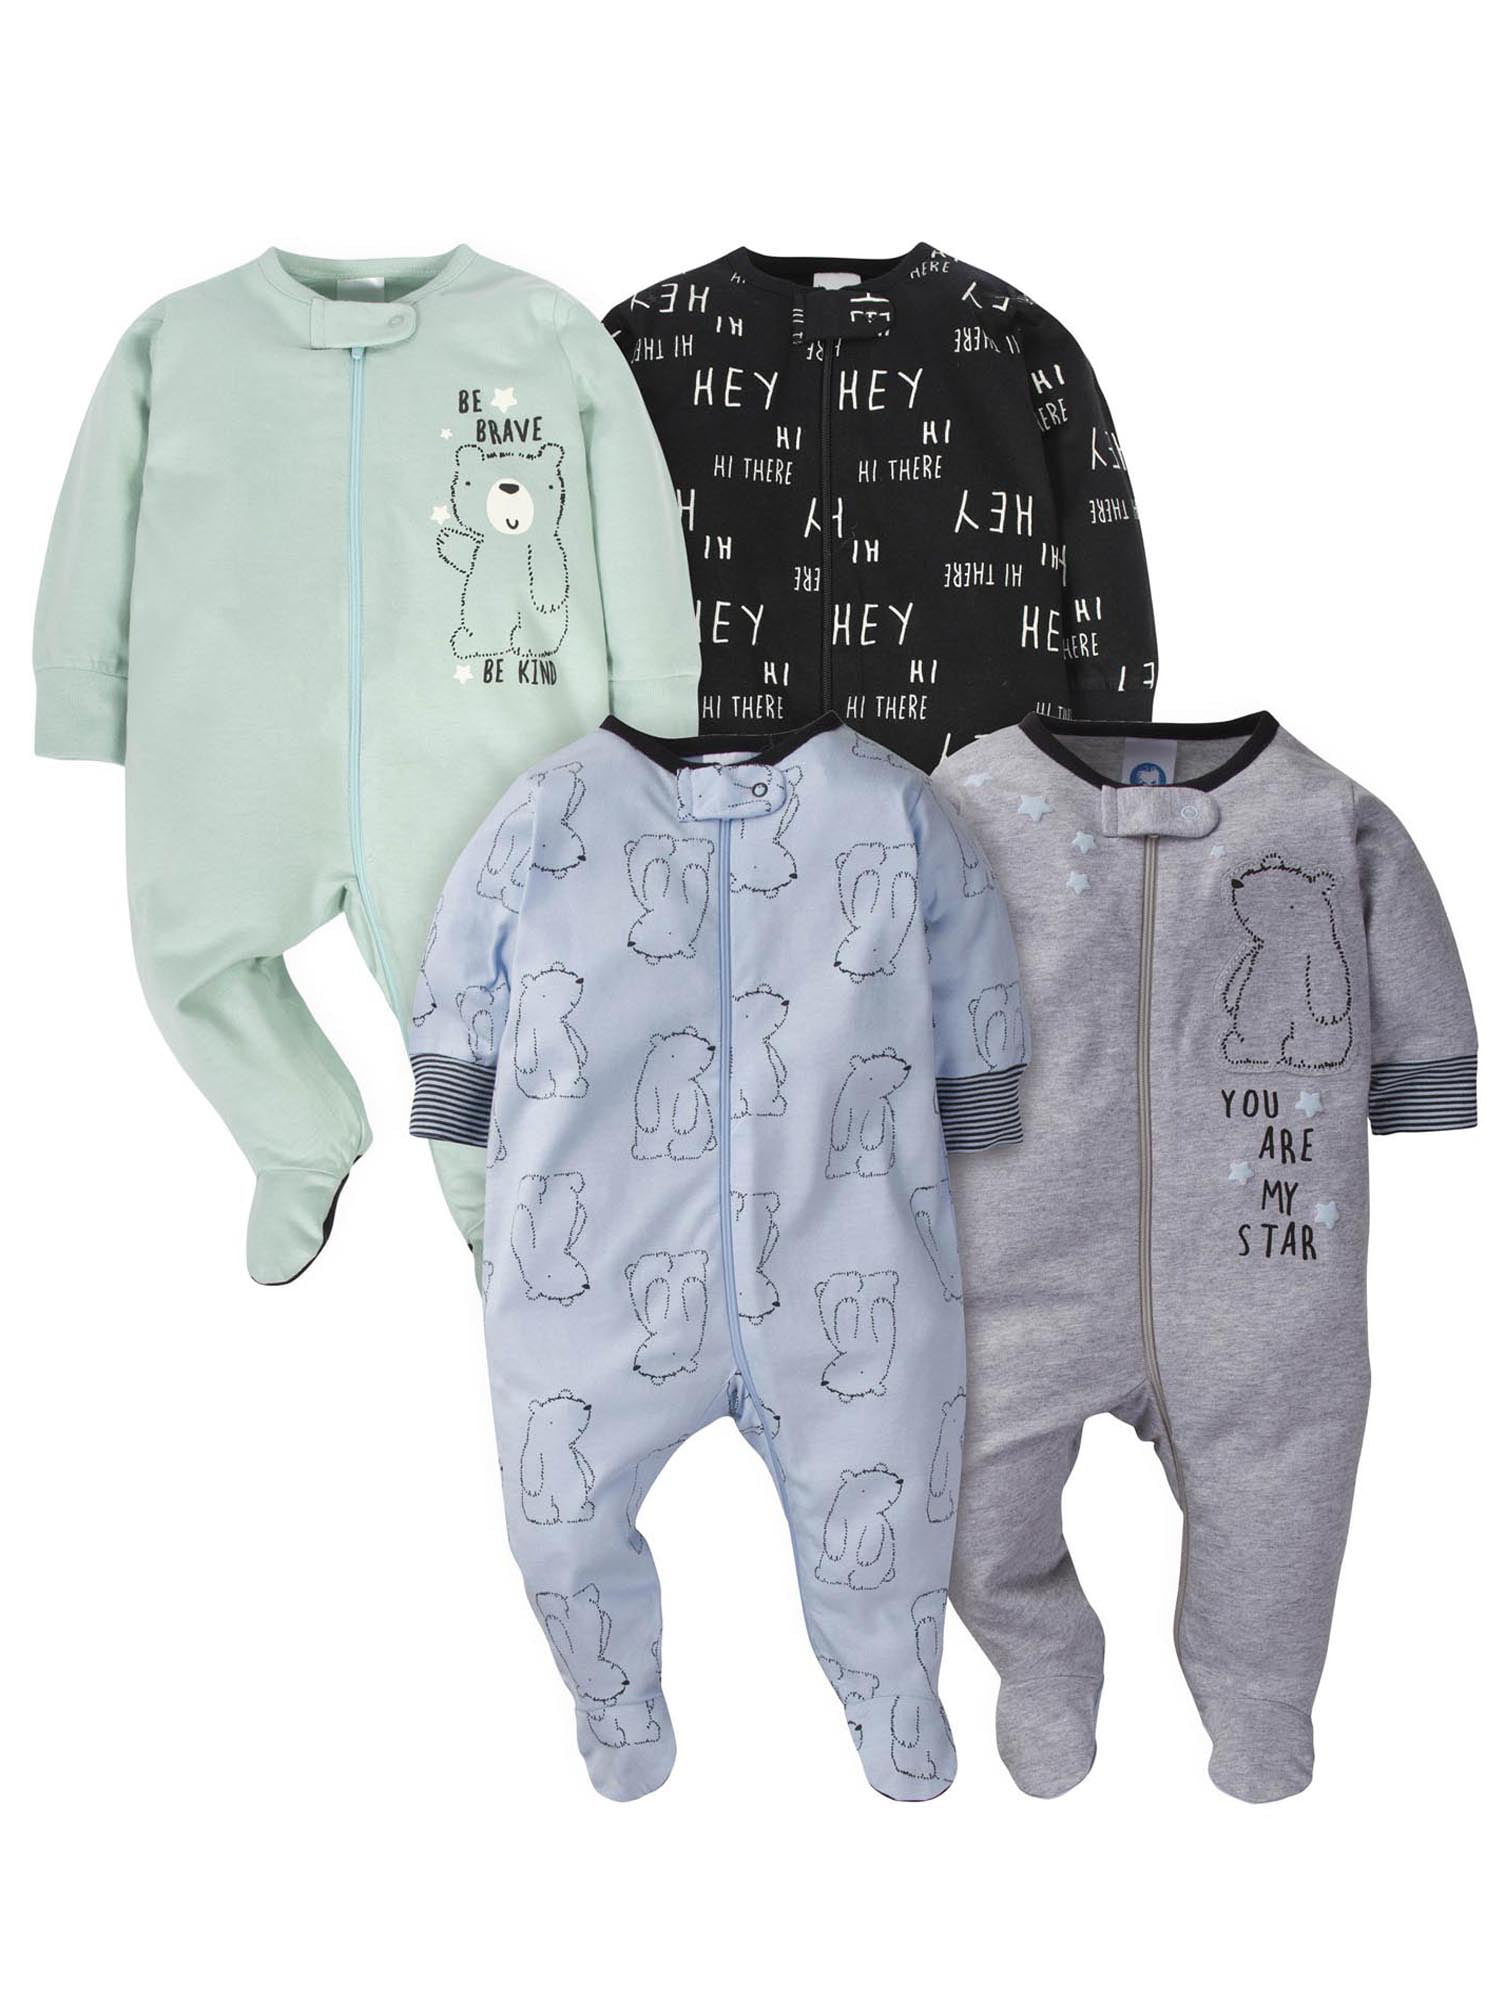 Baby Footed Pajamas with Mitten Cuffs Unisex Newborn Infant 2 Ways Zipper Cotton Footie Onesies